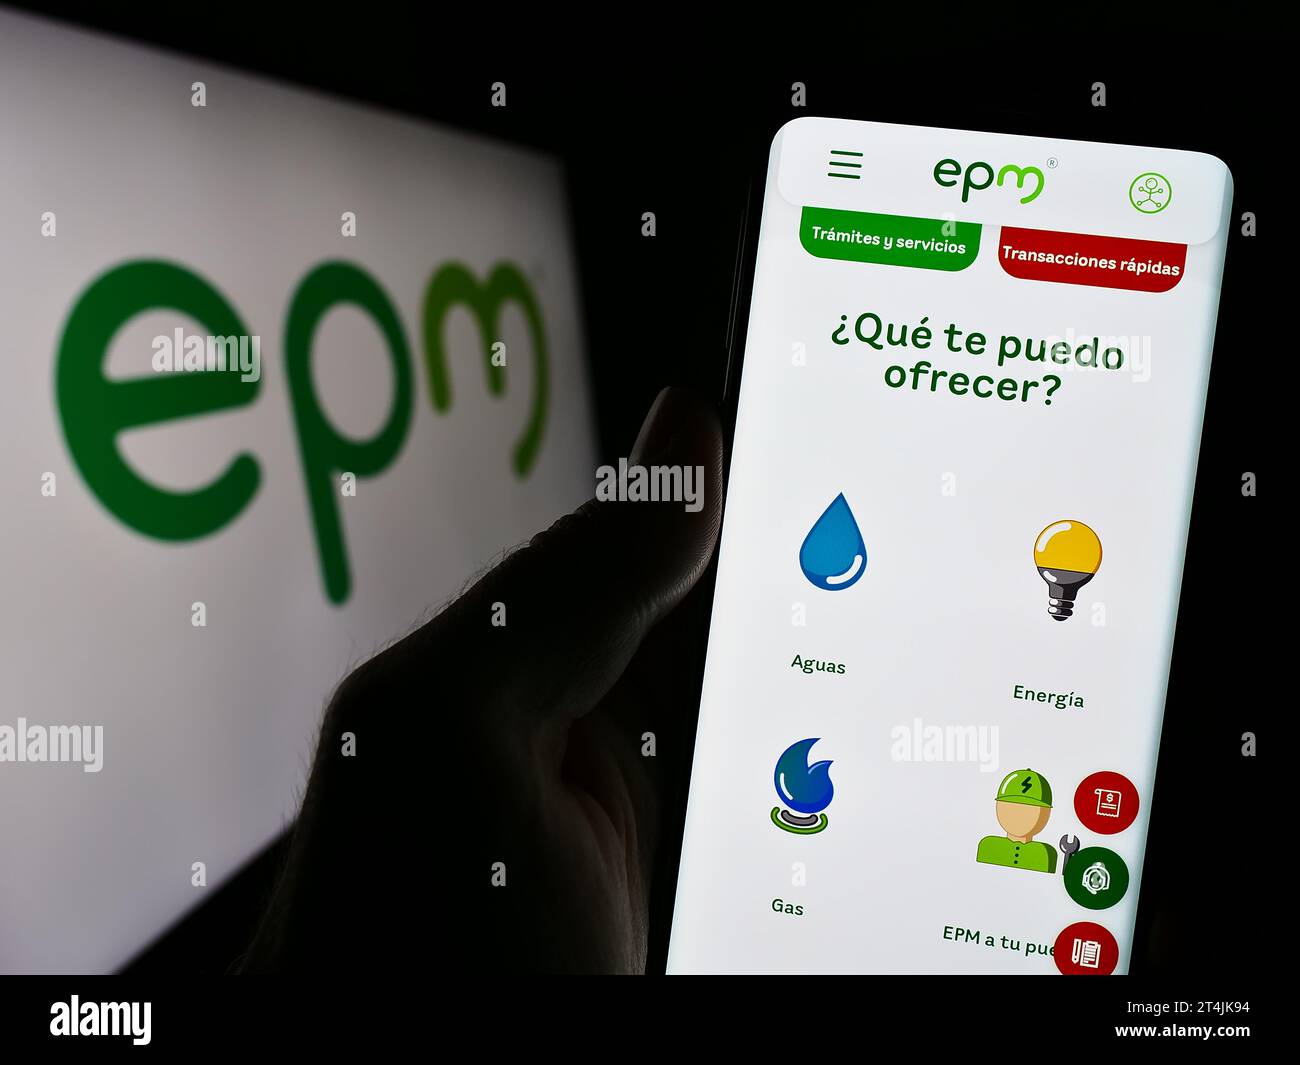 Persona in possesso di smartphone con pagina web della società colombiana Empresas Publicas de Medellin (EPM) con logo. Concentrarsi sul centro del display del telefono. Foto Stock